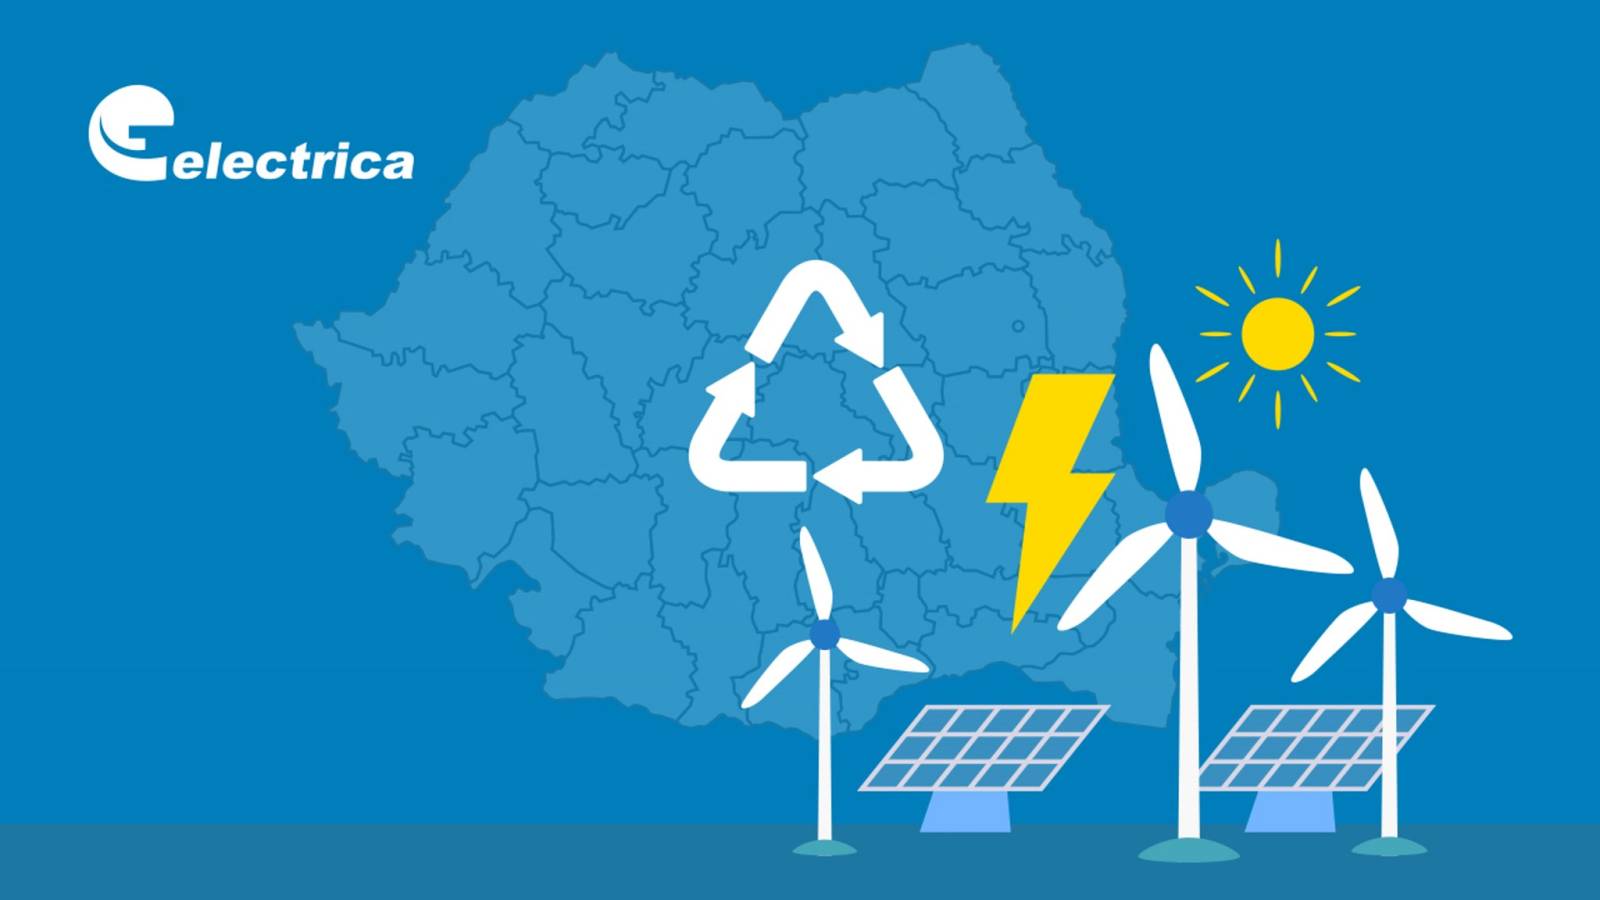 Offizielle Ankündigung von Electrica LAST MOMENT Kunden in ganz Rumänien informiert